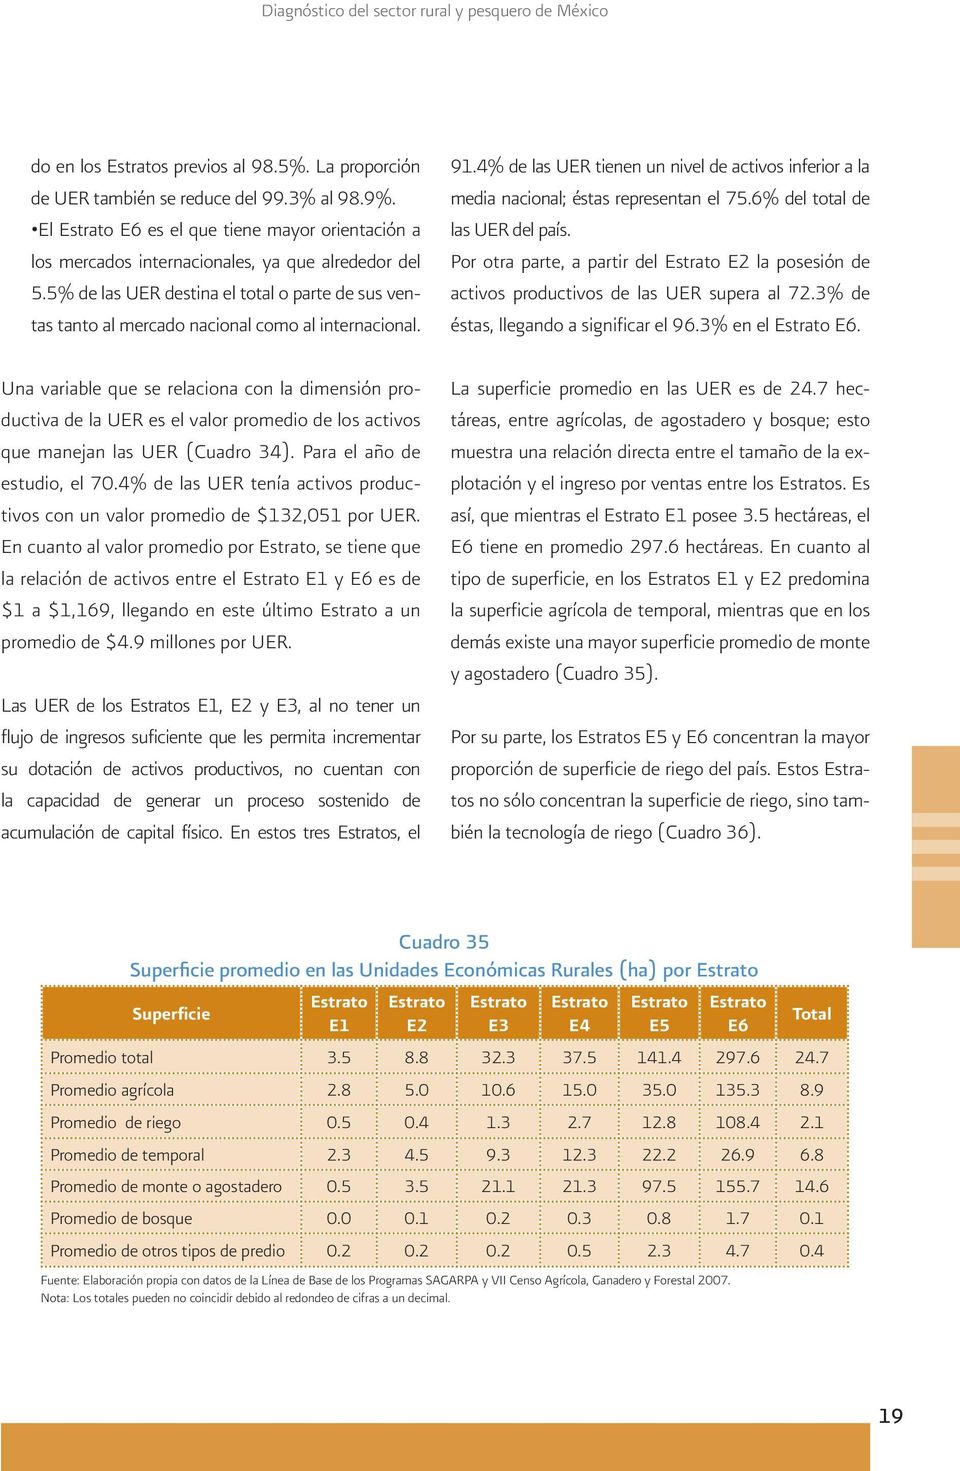 6% del total de las UER del país. Por otra parte, a partir del E2 la posesión de activos productivos de las UER supera al 72.3% de éstas, llegando a significar el 96.3% en el E6.